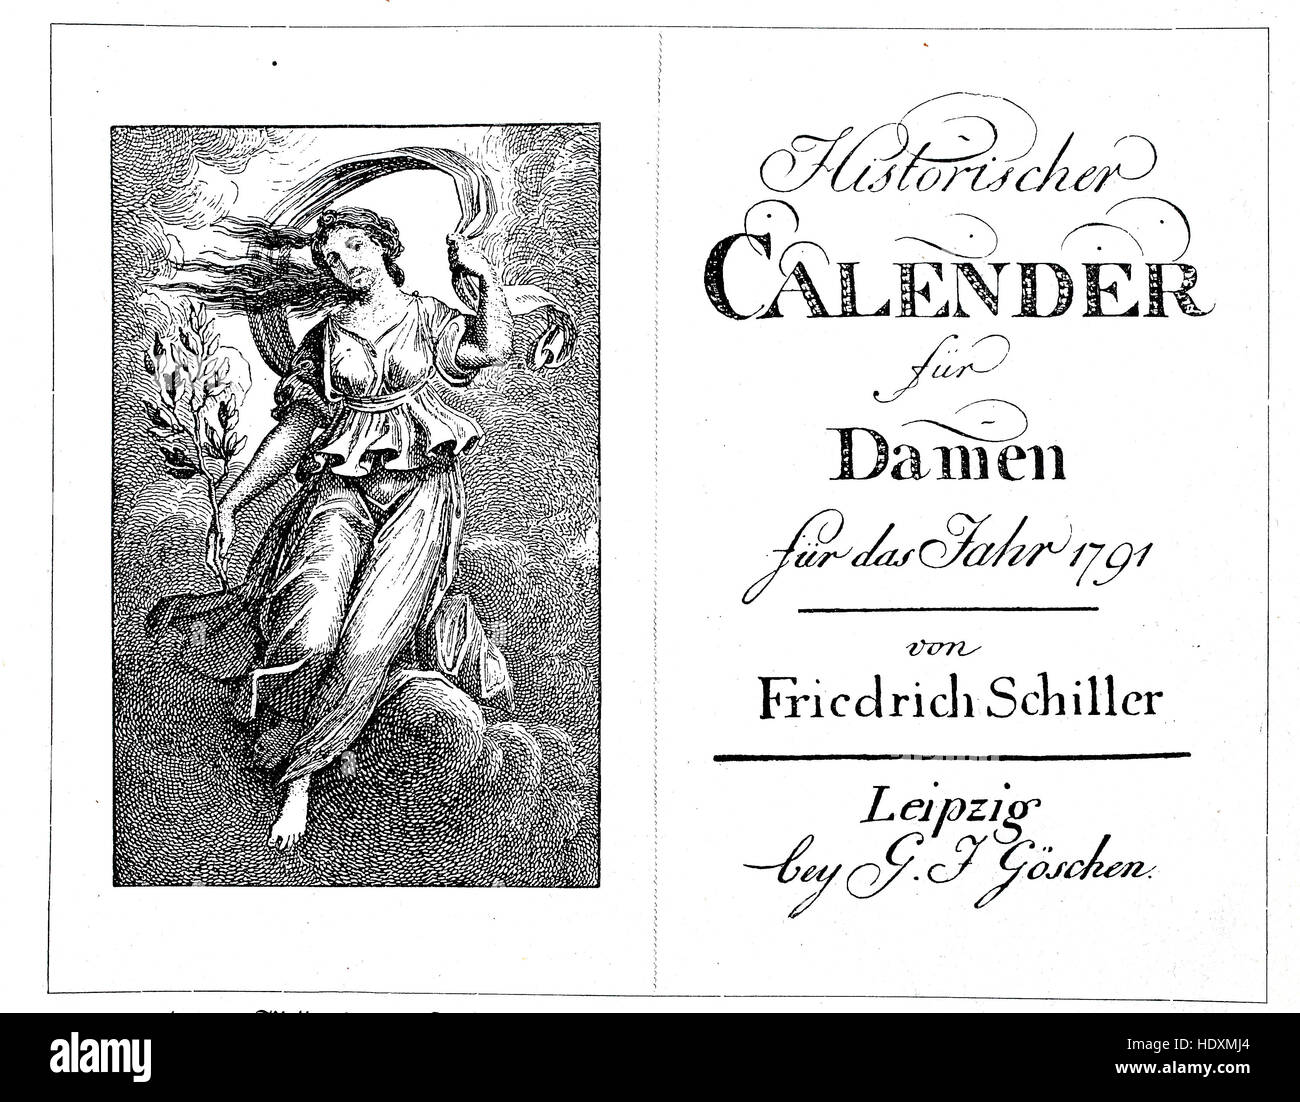 Immagine di copertina, calendario storico per le donne di Friedrich Schiller per l'anno 1791, la xilografia a partire dall'anno 1882, digitale migliorata Foto Stock